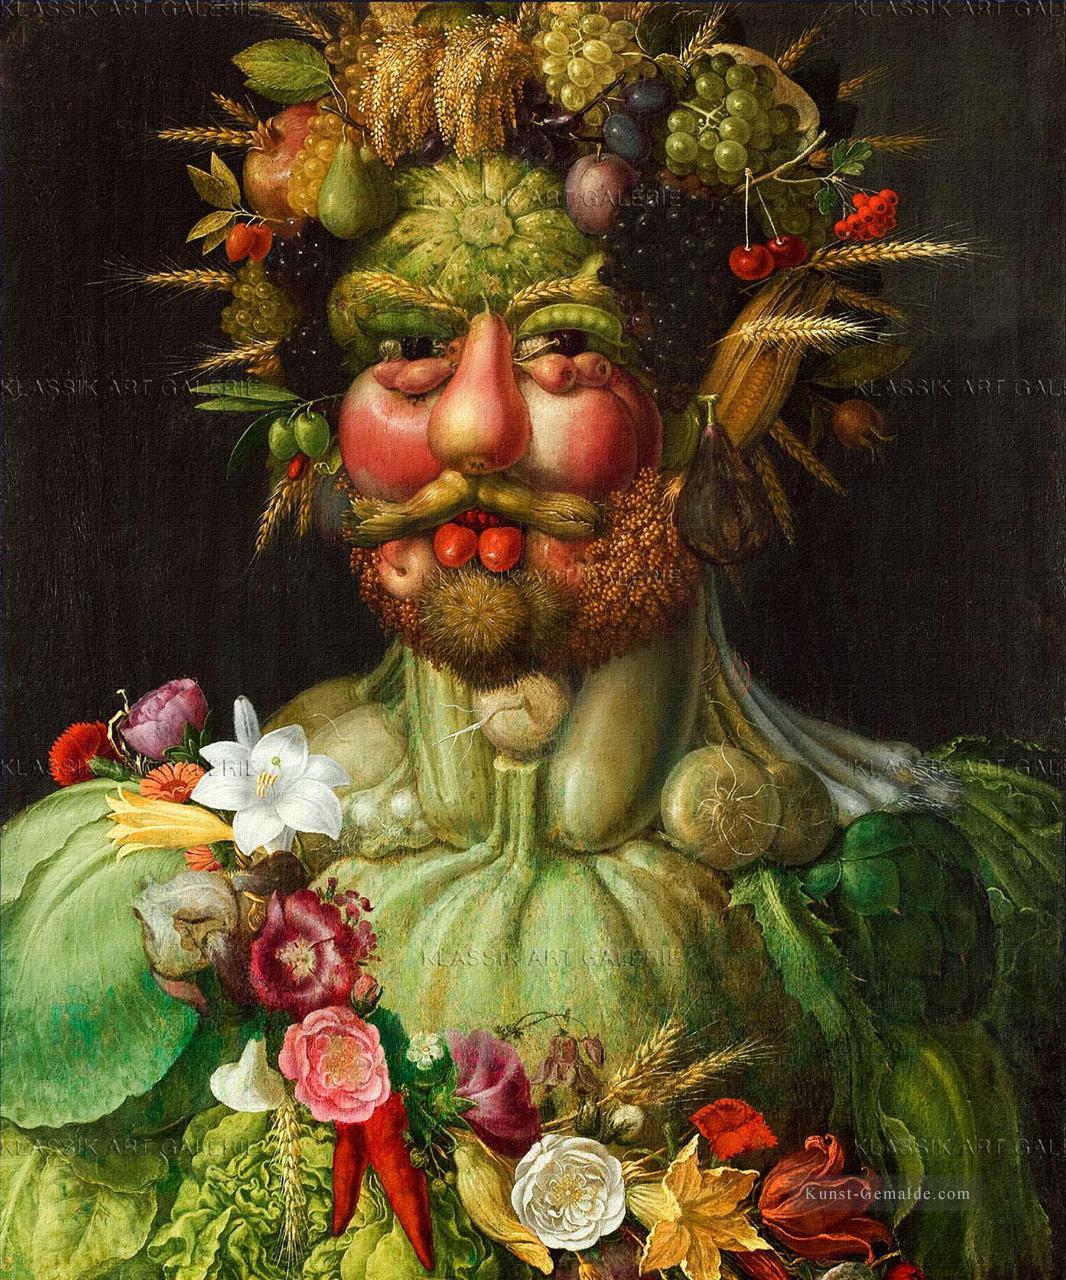 Mann von Gemüse und Blumen Giuseppe Arcimboldo Klassisches Stillleben Ölgemälde